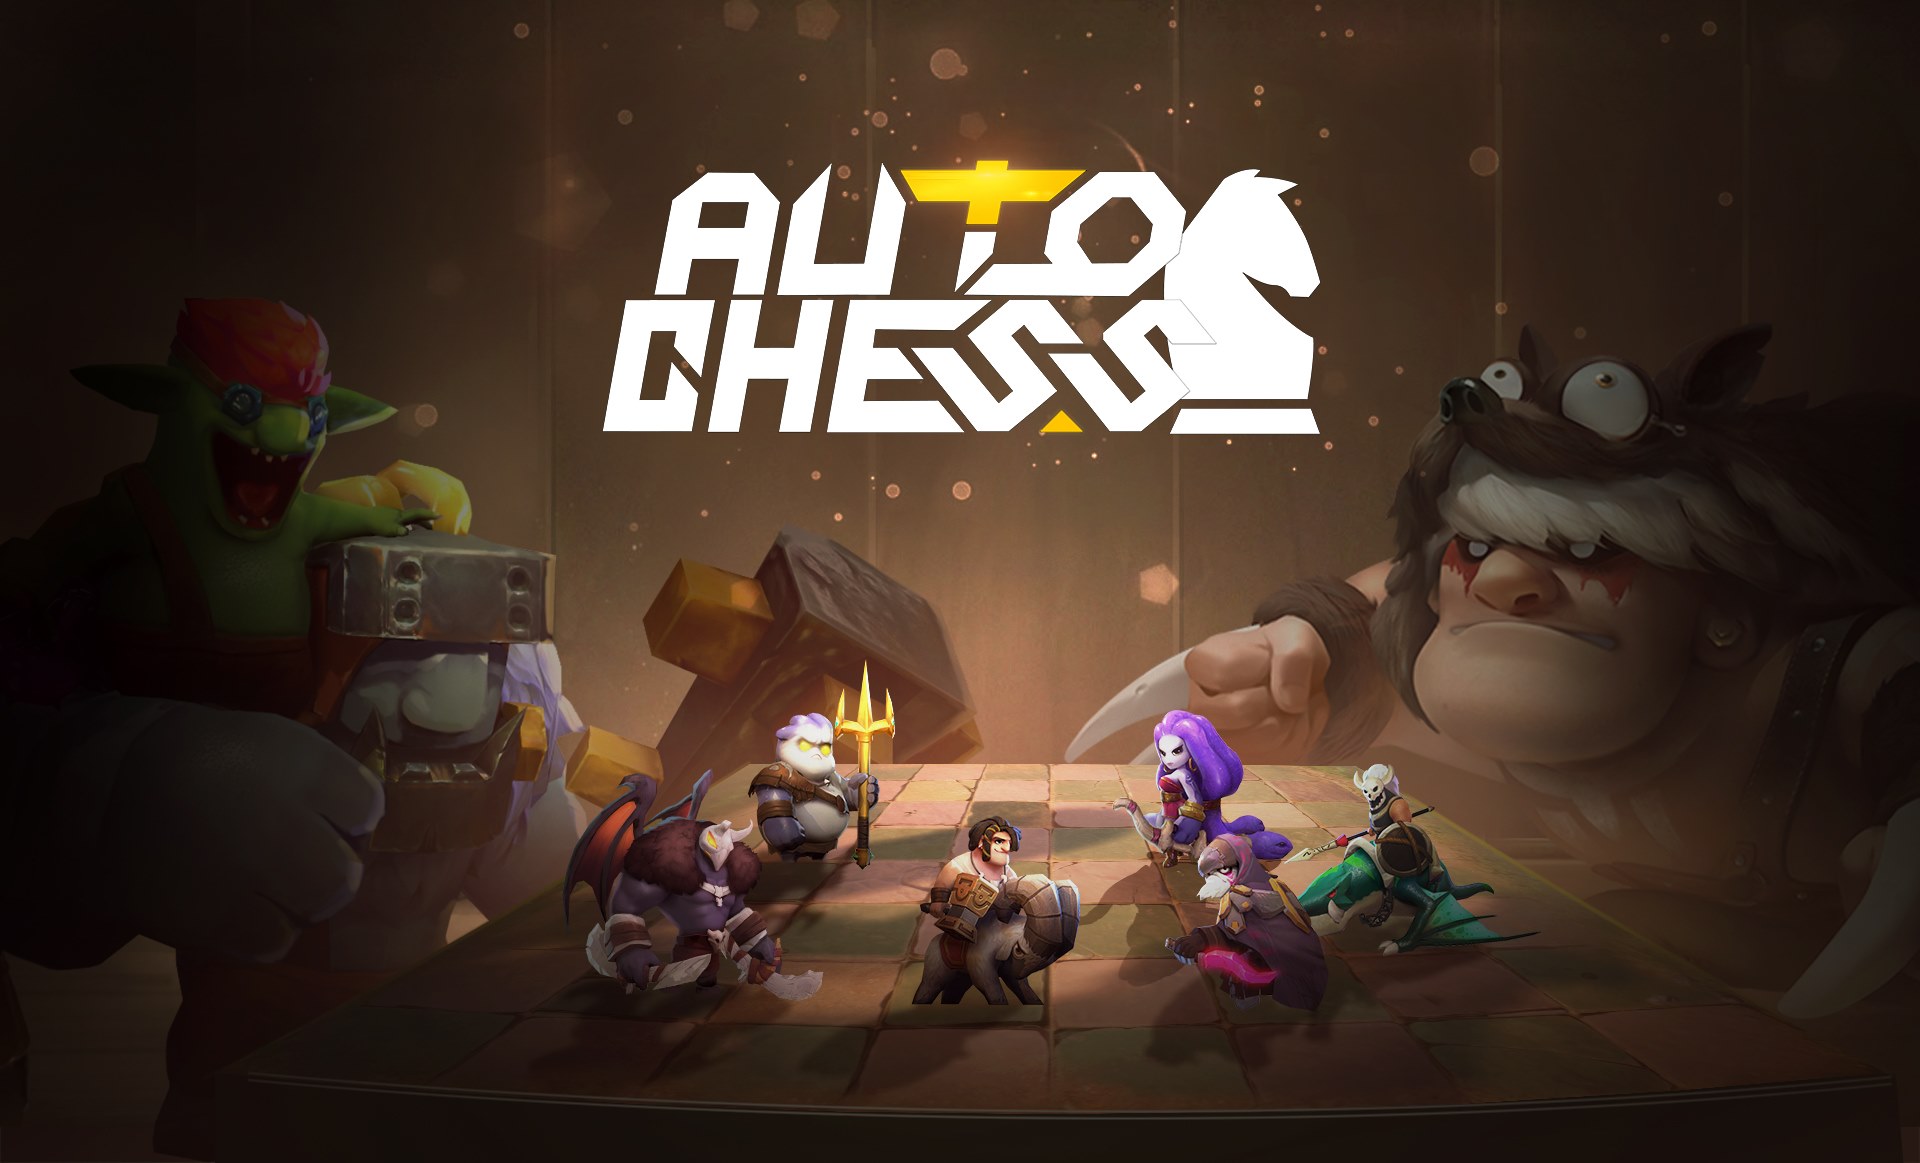 VNG chính thức phát hành game Auto Chess Mobile phiên bản Việt